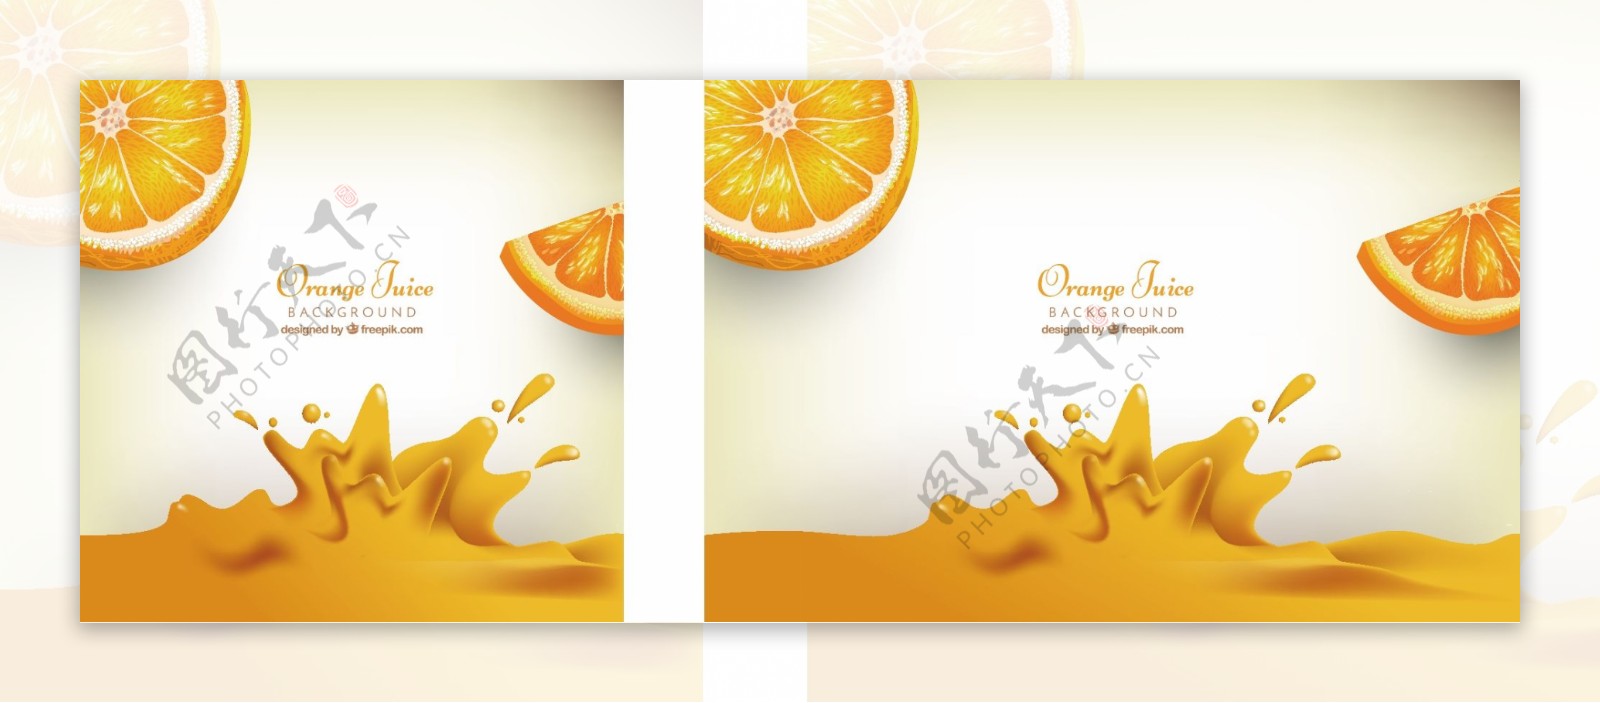 橙汁的现实背景